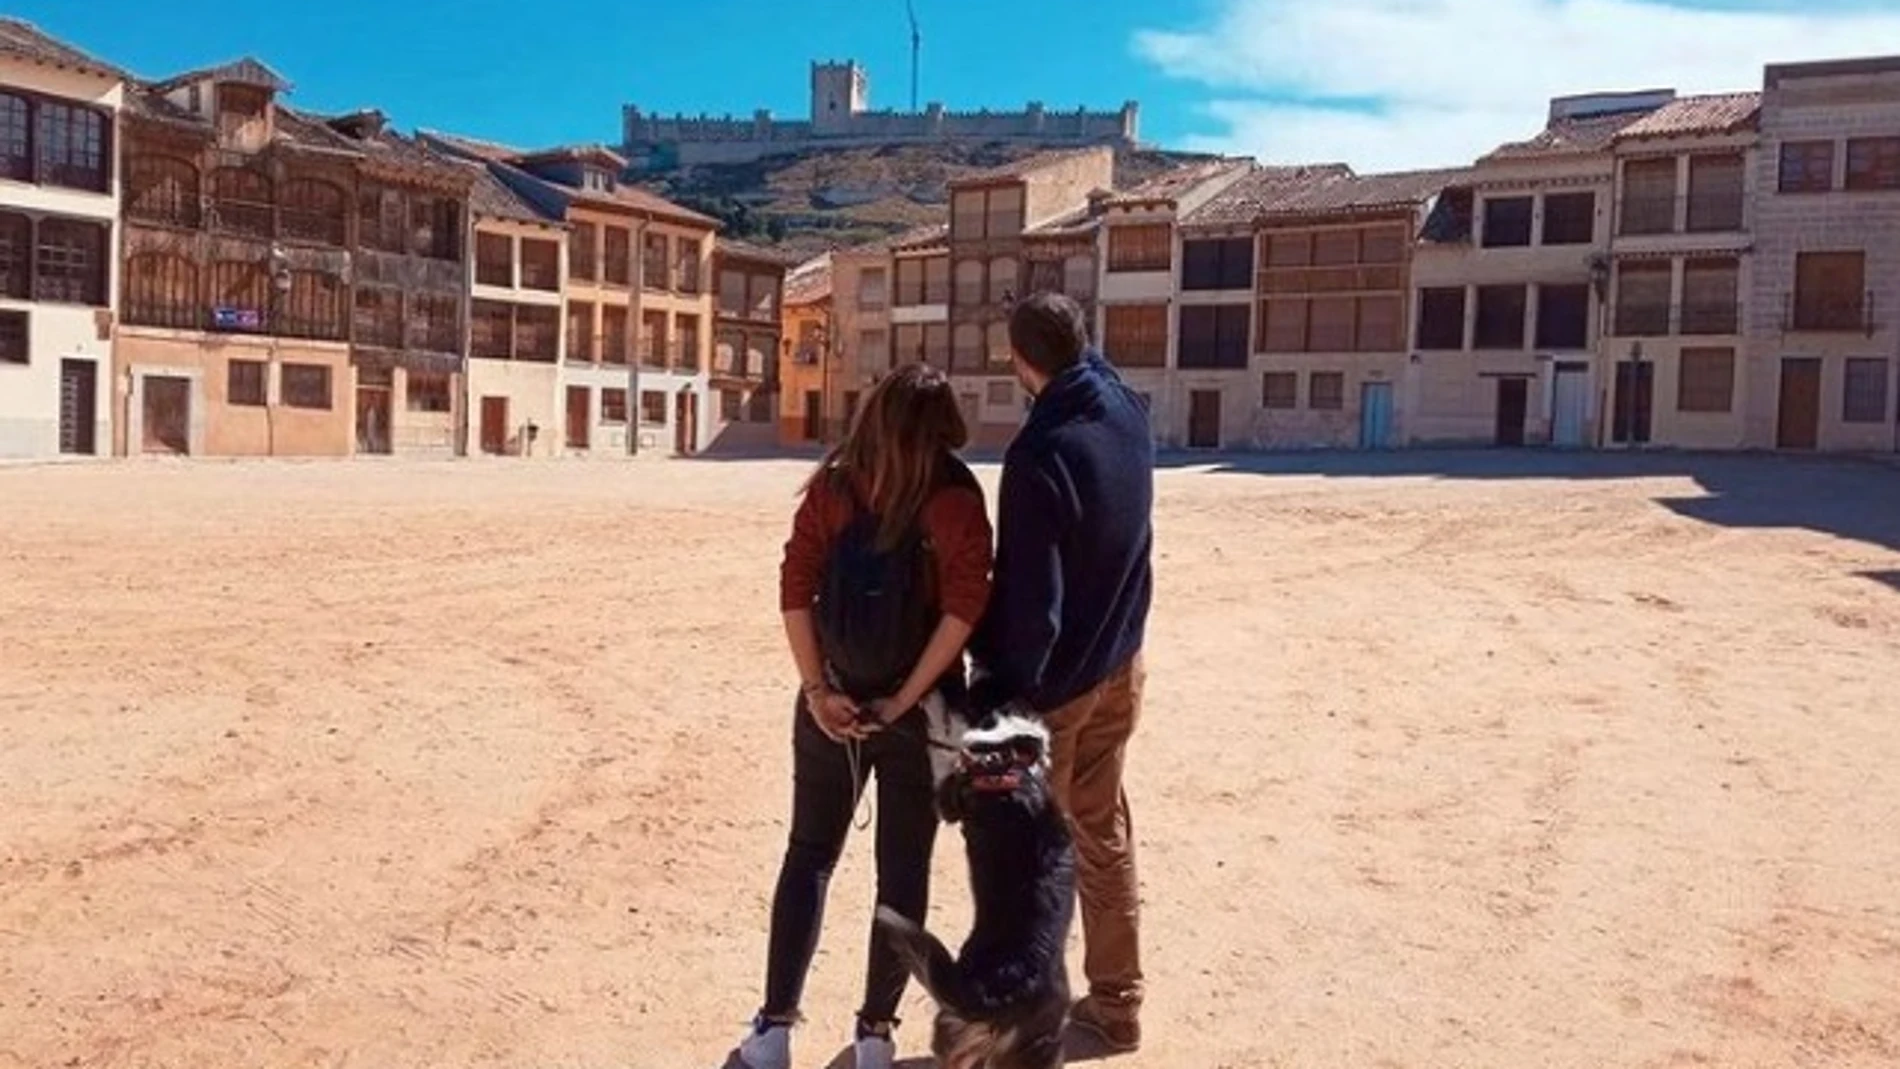 Una pareja con su perro contempla la vista del castillo de Peñafiel desde la Plaza del Coso